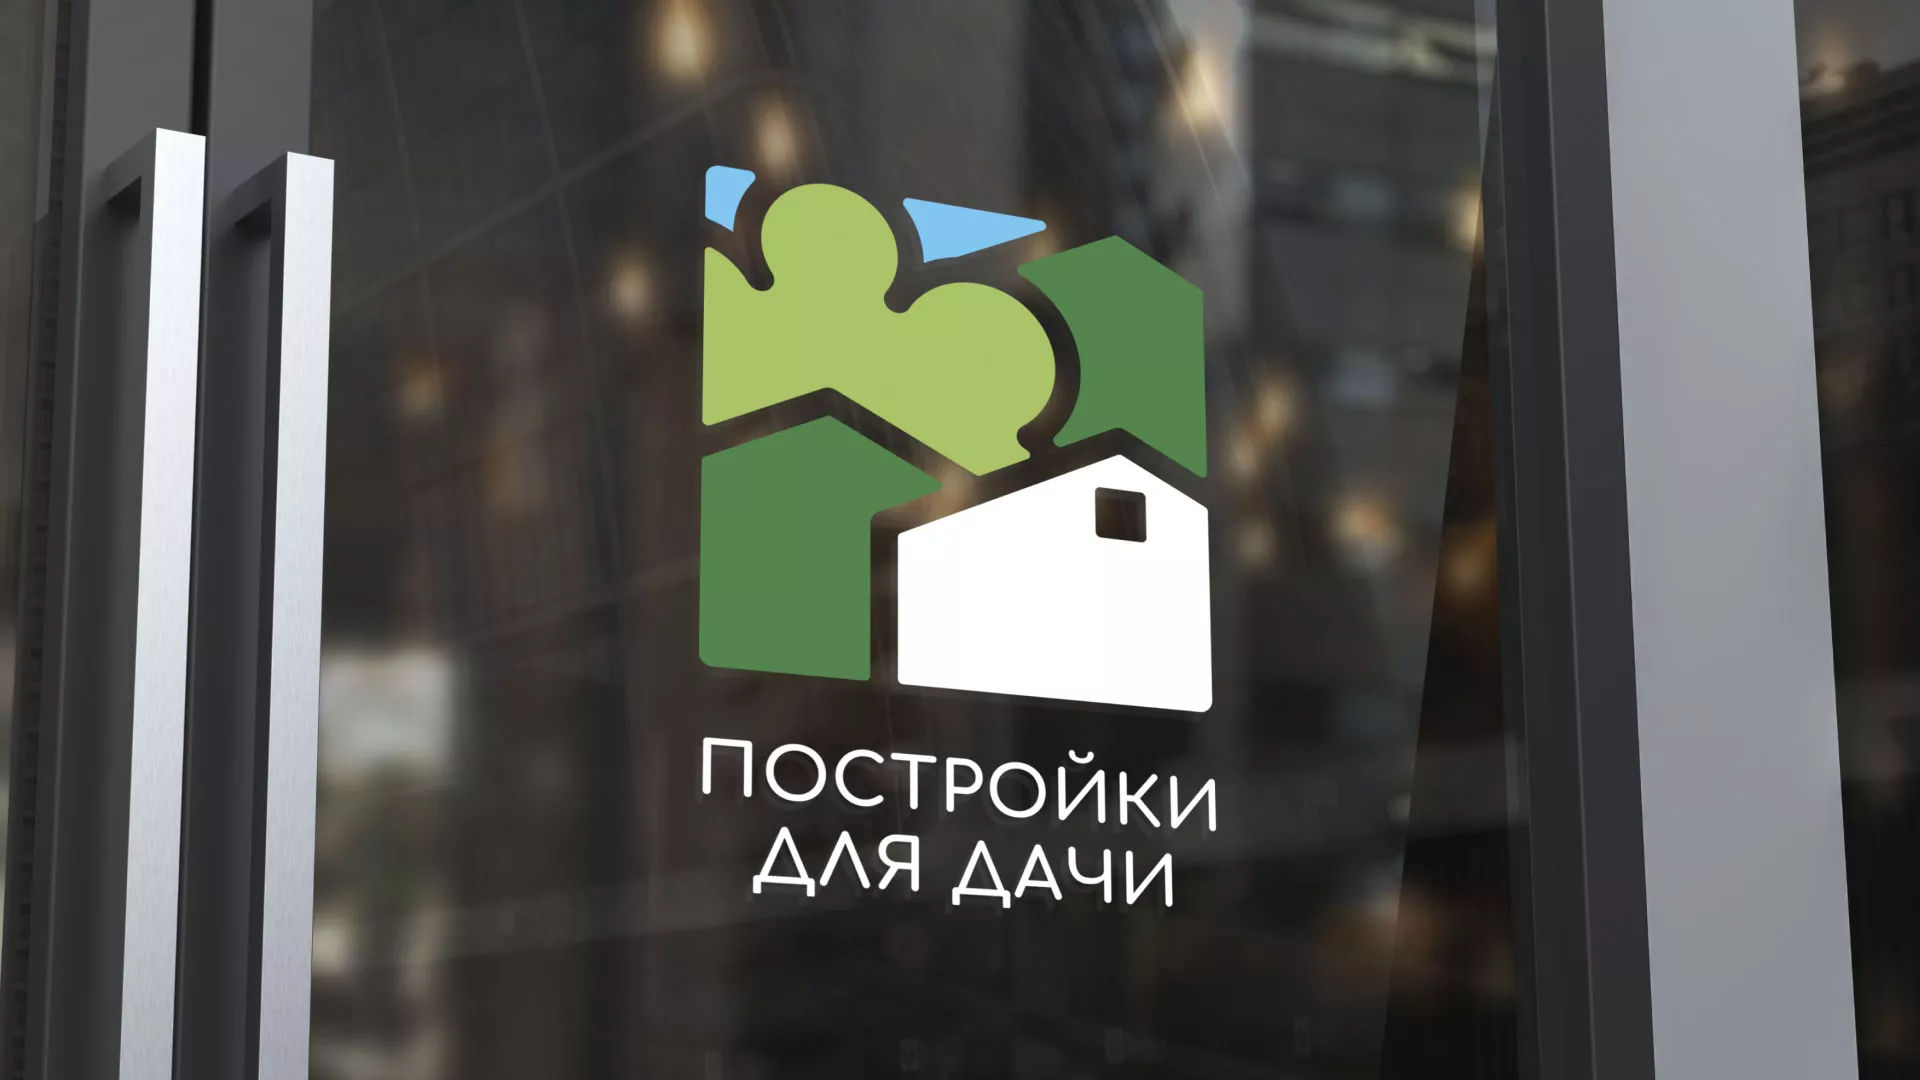 Разработка логотипа в Богородске для компании «Постройки для дачи»